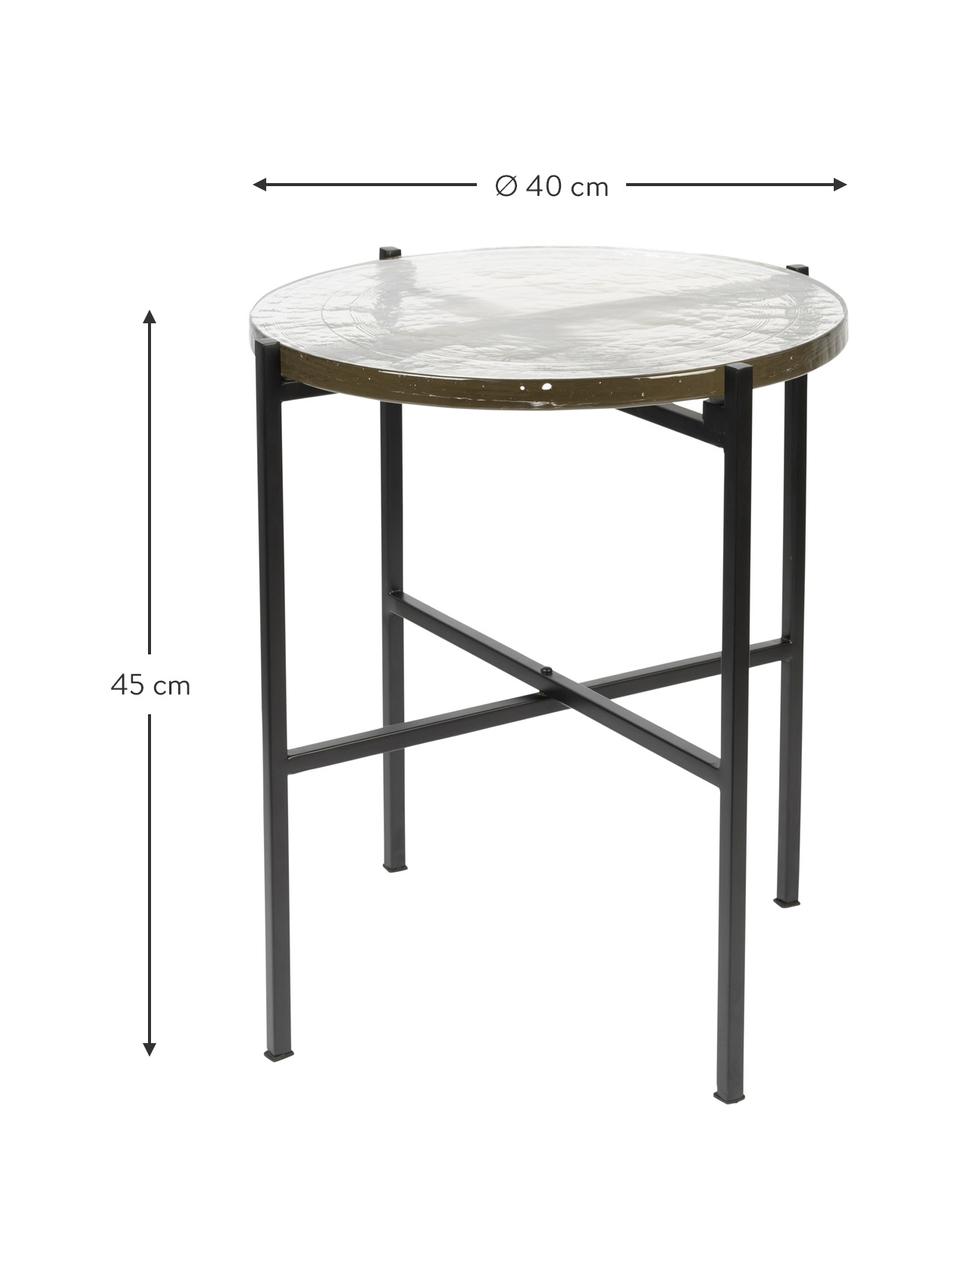 Runder Beistelltisch Vidrio mit Glasplatte, Tischplatte: Glas, Gestell: Metall, beschichtet, Schwarz, Ø 40 x H 45 cm